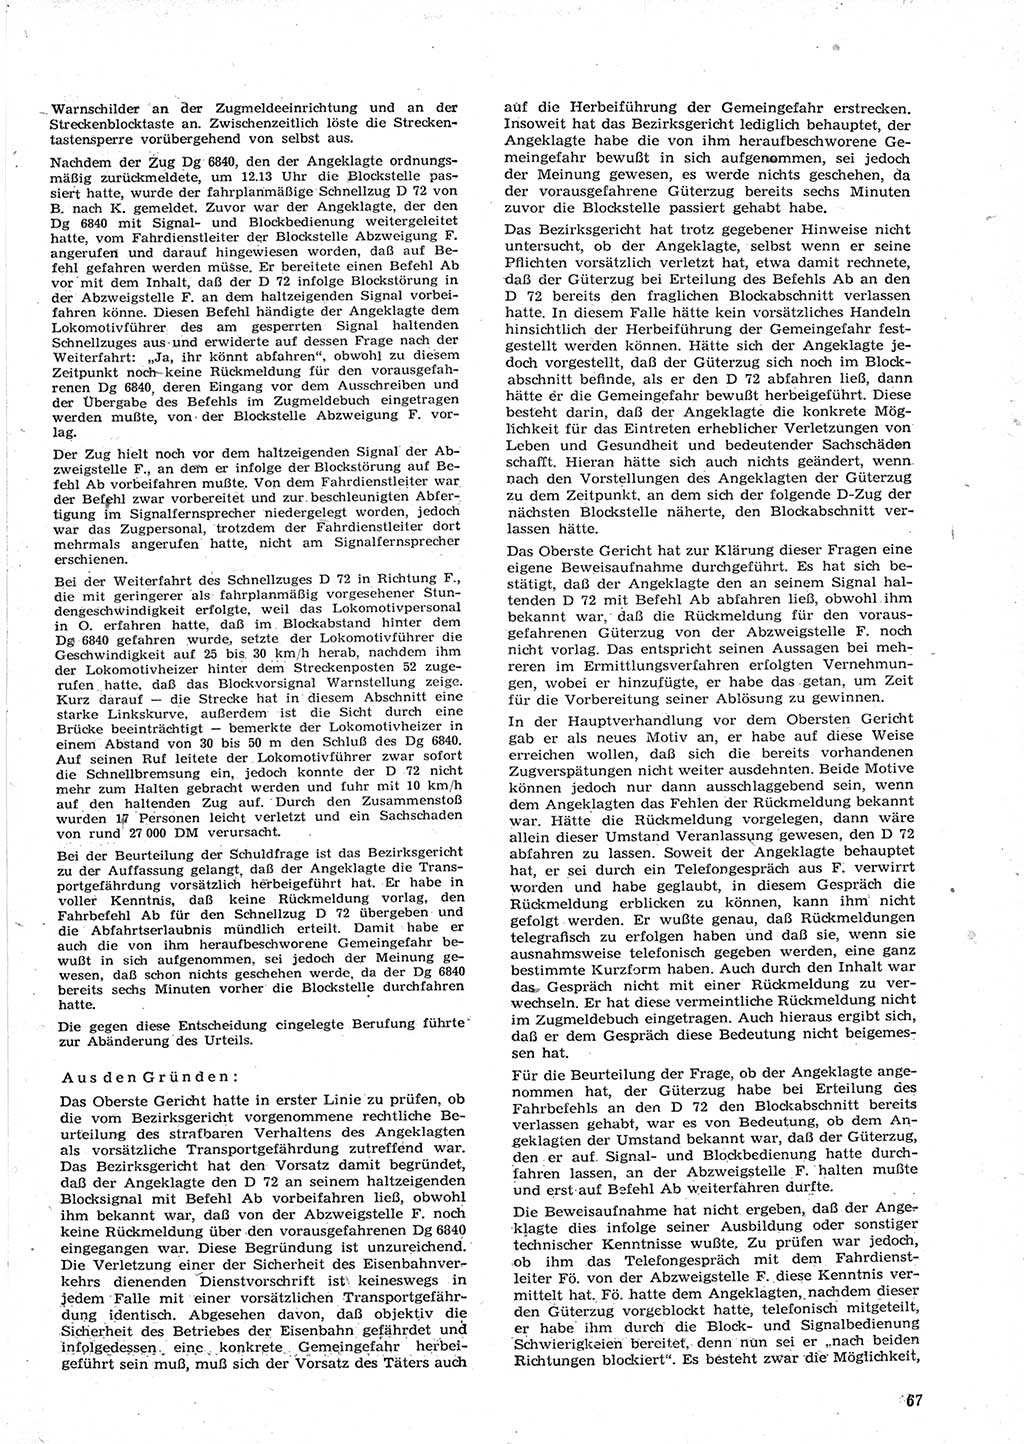 Neue Justiz (NJ), Zeitschrift für Recht und Rechtswissenschaft [Deutsche Demokratische Republik (DDR)], 15. Jahrgang 1961, Seite 67 (NJ DDR 1961, S. 67)